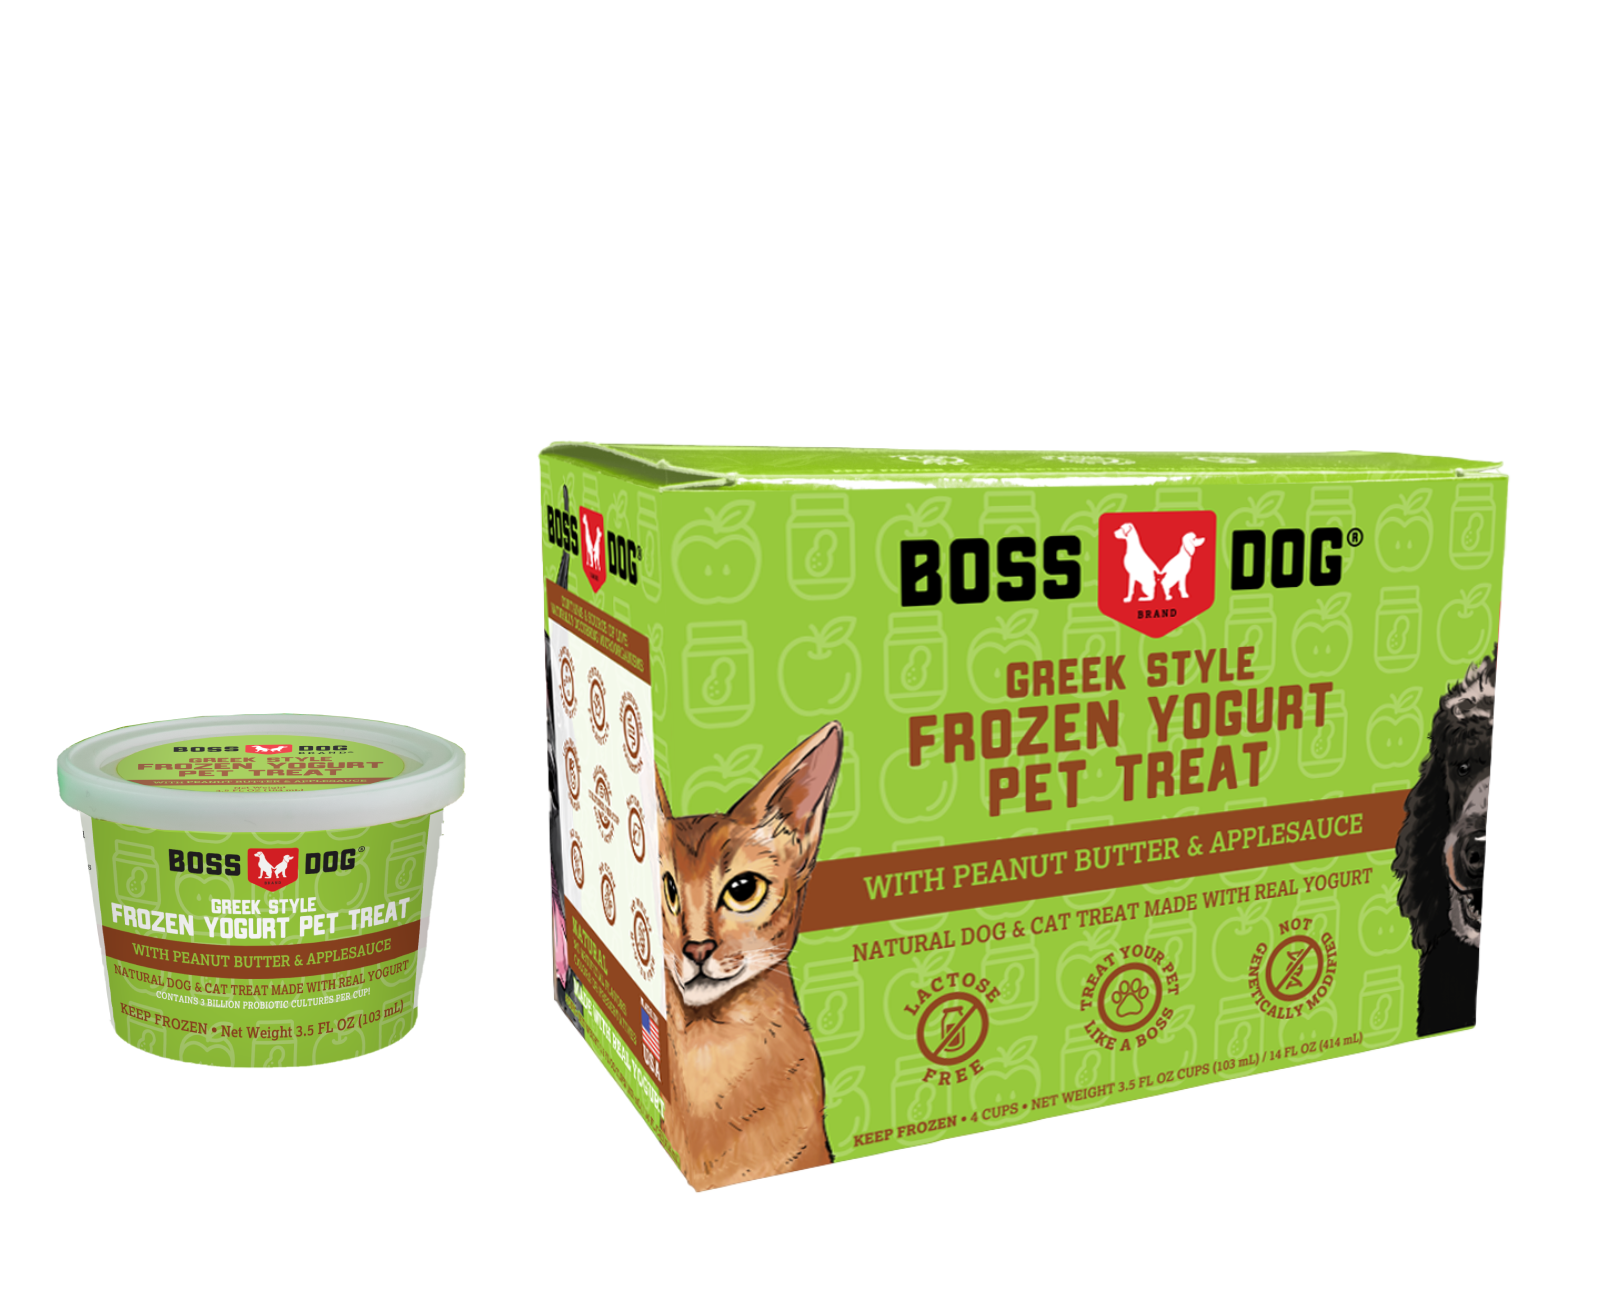 Boss Dog Frozen Yogurt Peanut Butter & Applesauce - Molly's Healthy Pet ...